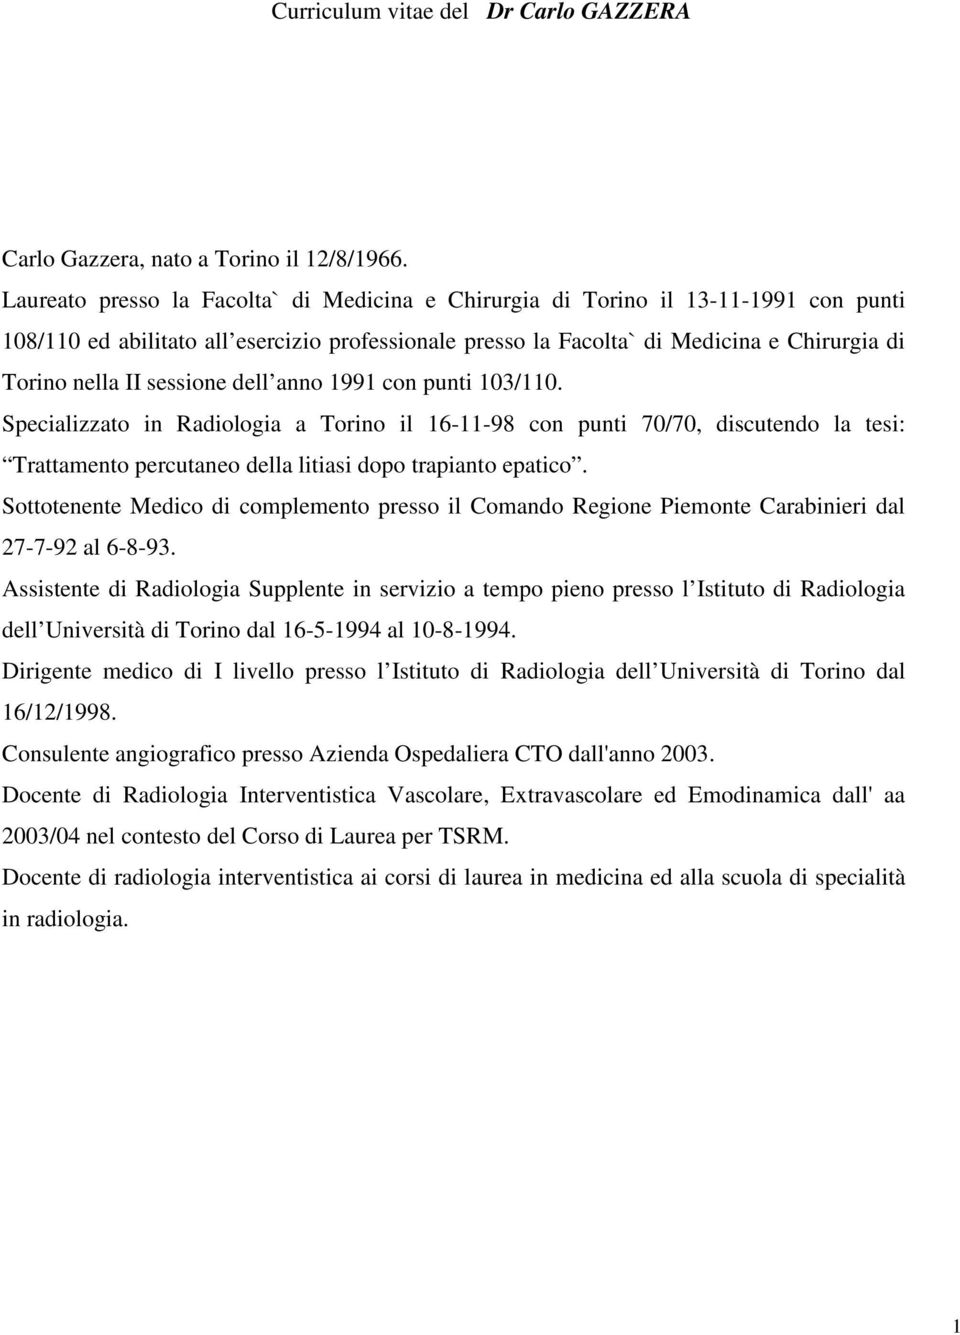 sessione dell anno 1991 con punti 103/110. Specializzato in Radiologia a Torino il 16-11-98 con punti 70/70, discutendo la tesi: Trattamento percutaneo della litiasi dopo trapianto epatico.